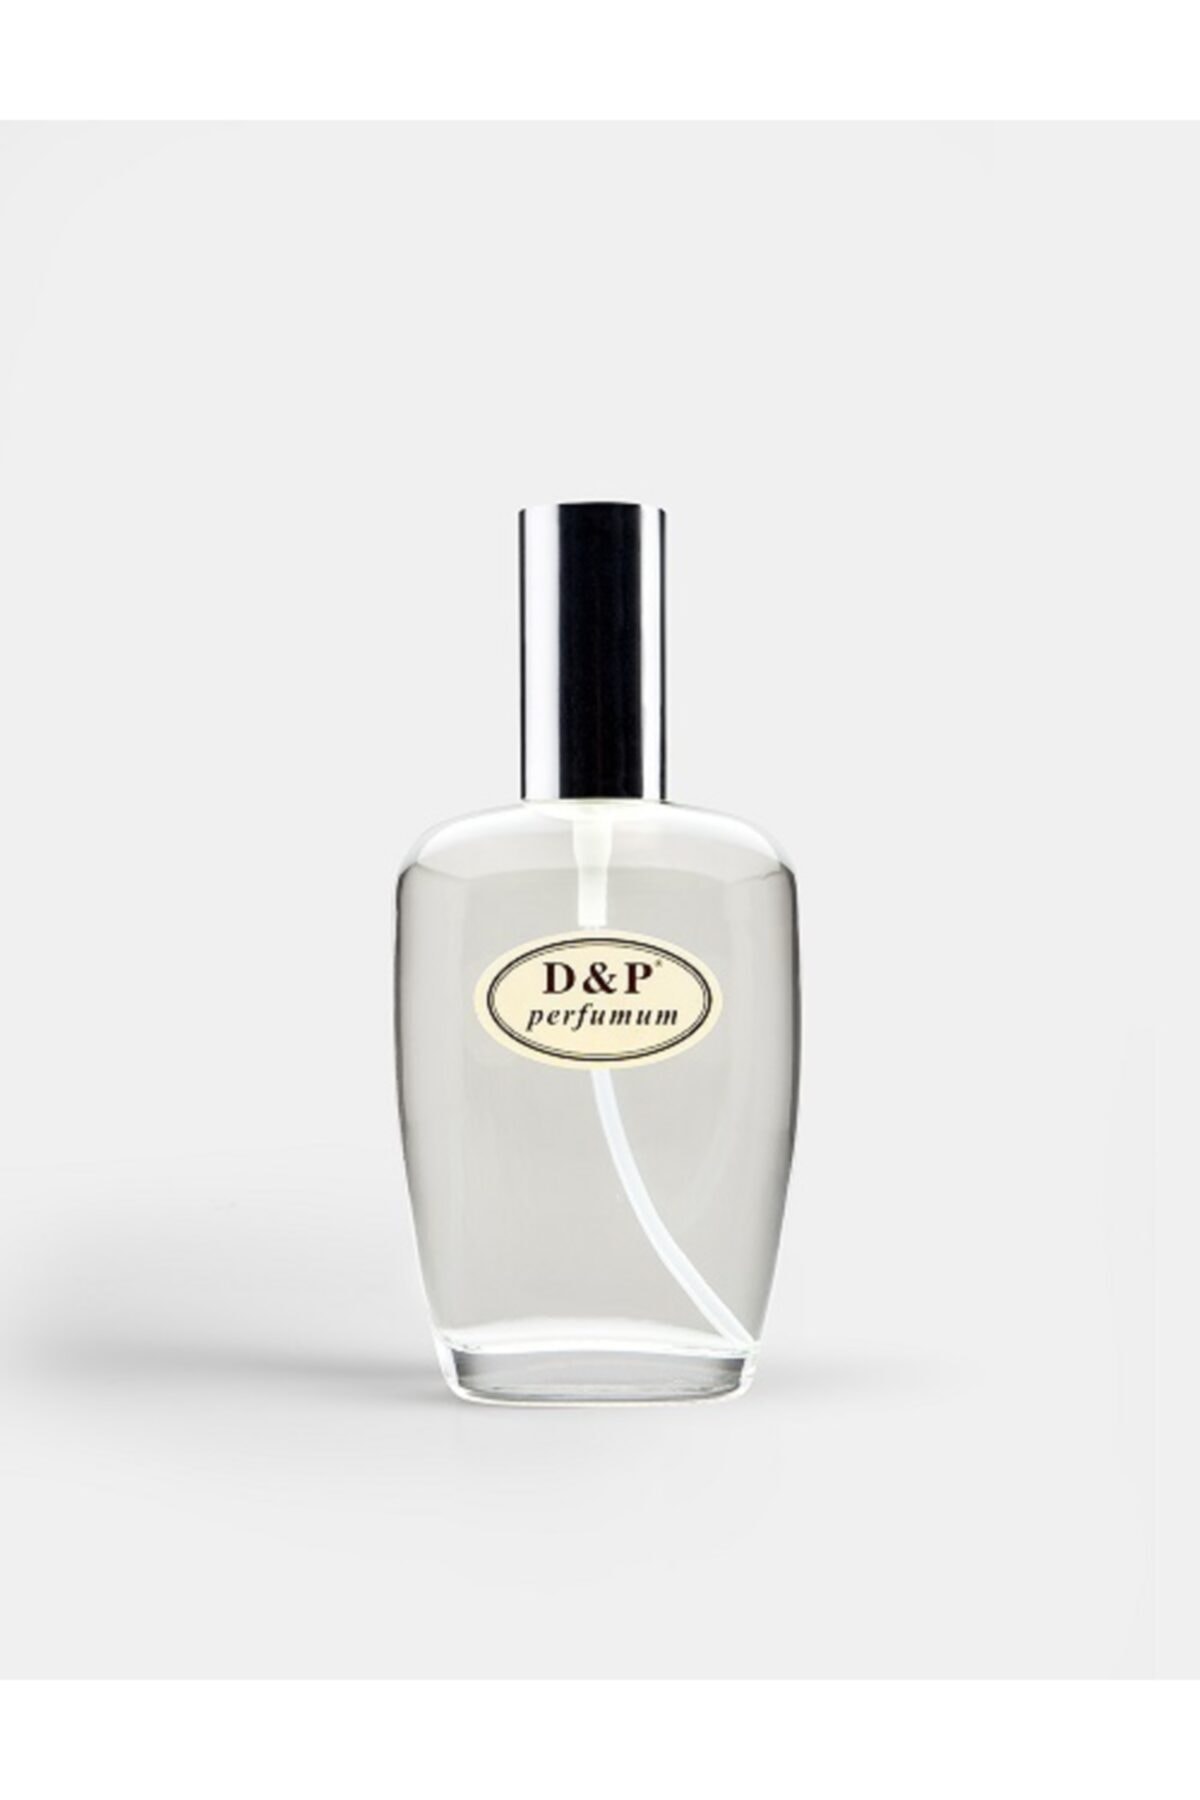 D&P Perfumum C6 Kadın Parfüm 100 ml